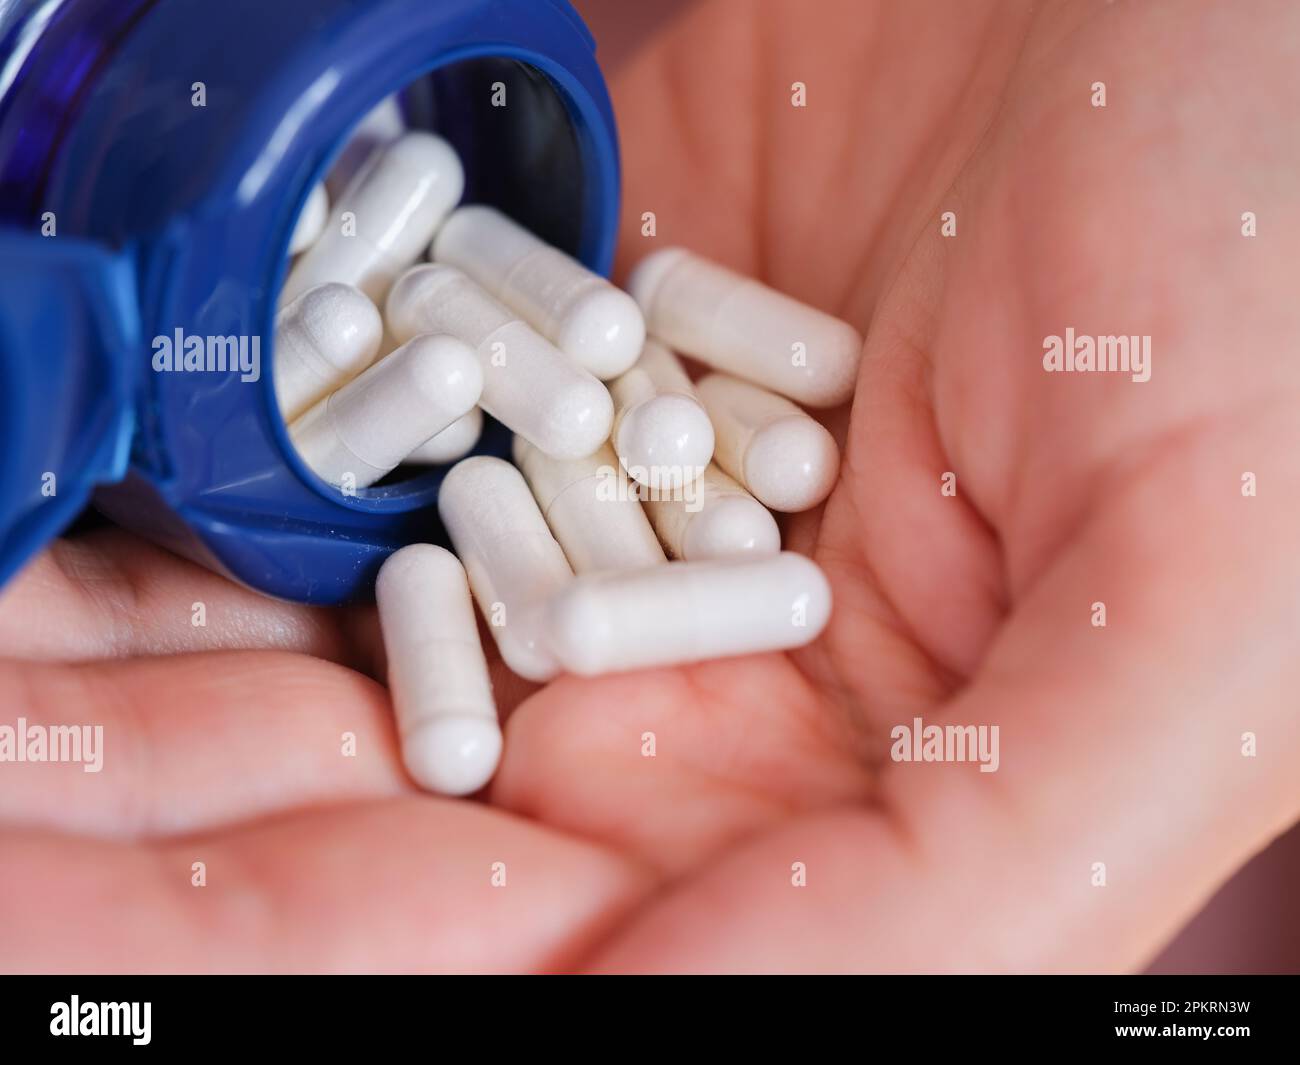 Une femme verse des capsules de diméthylaminoéthanol bitartrate (DMAE) d'une bouteille dans la paume de sa main. Gros plan. Banque D'Images